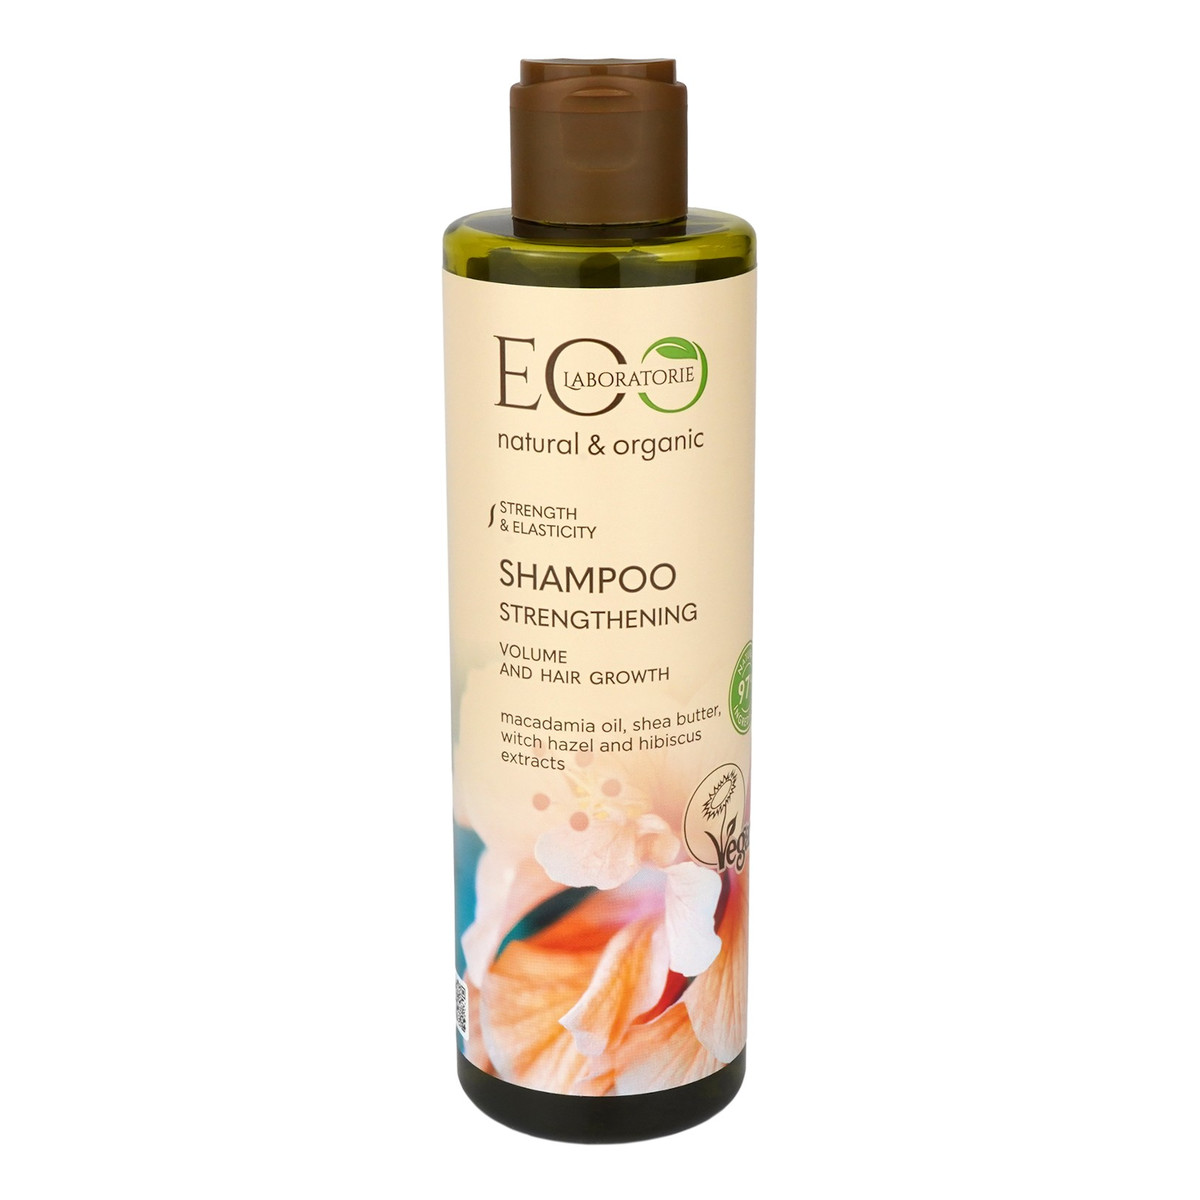 eco lab szampon wizaz